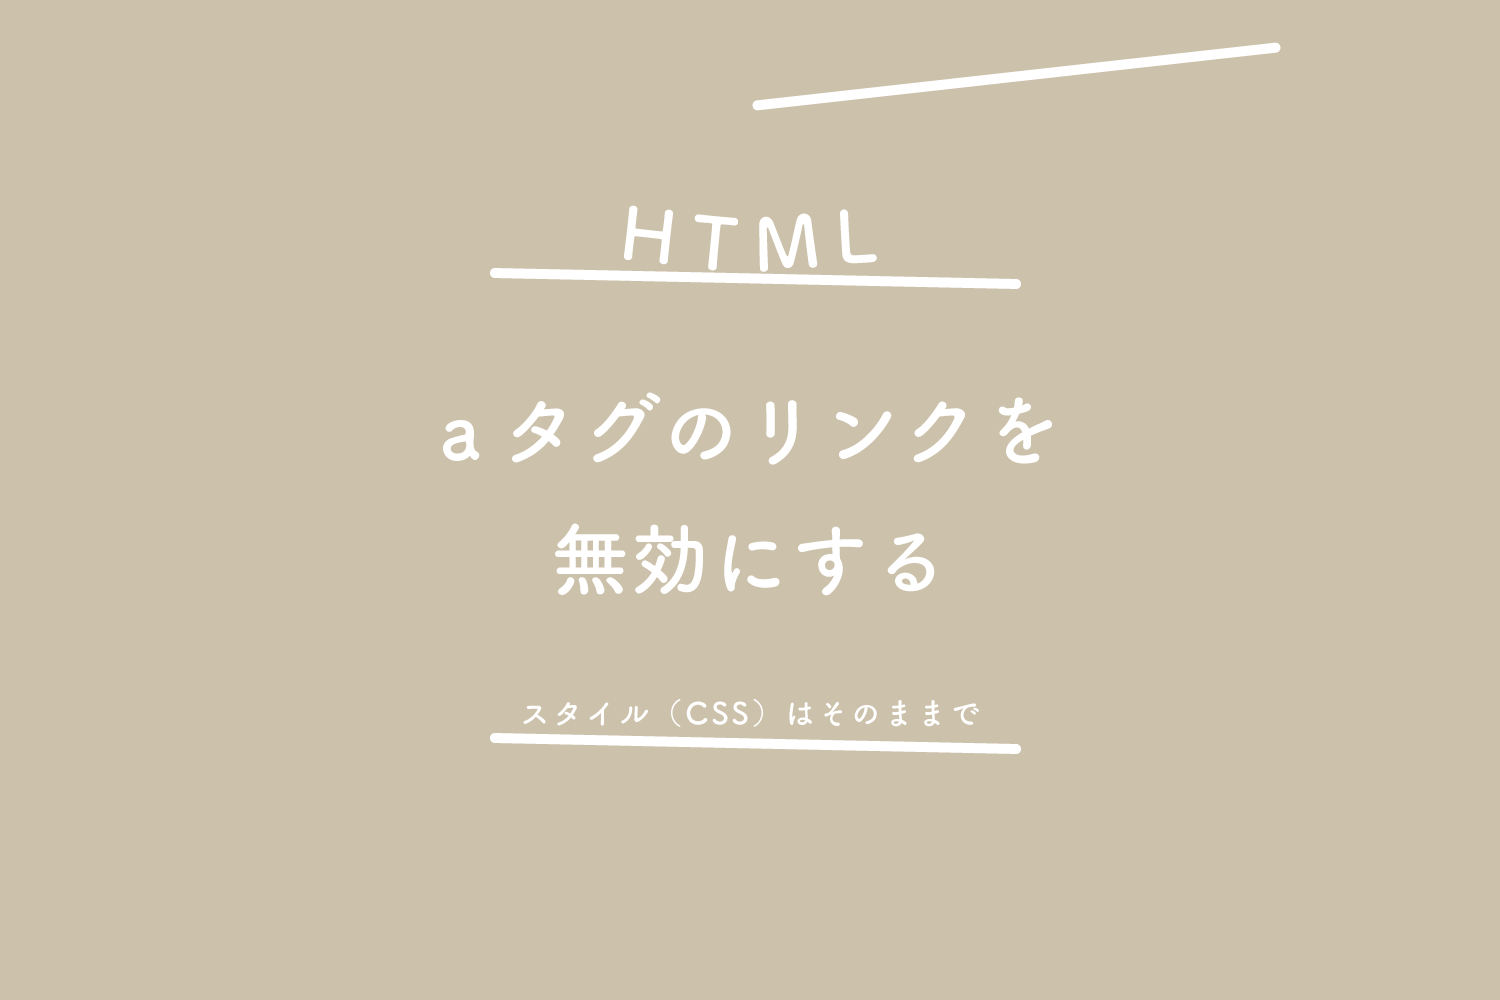 【HTML】aタグのリンクを無効にする、スタイル（CSS）はそのままで